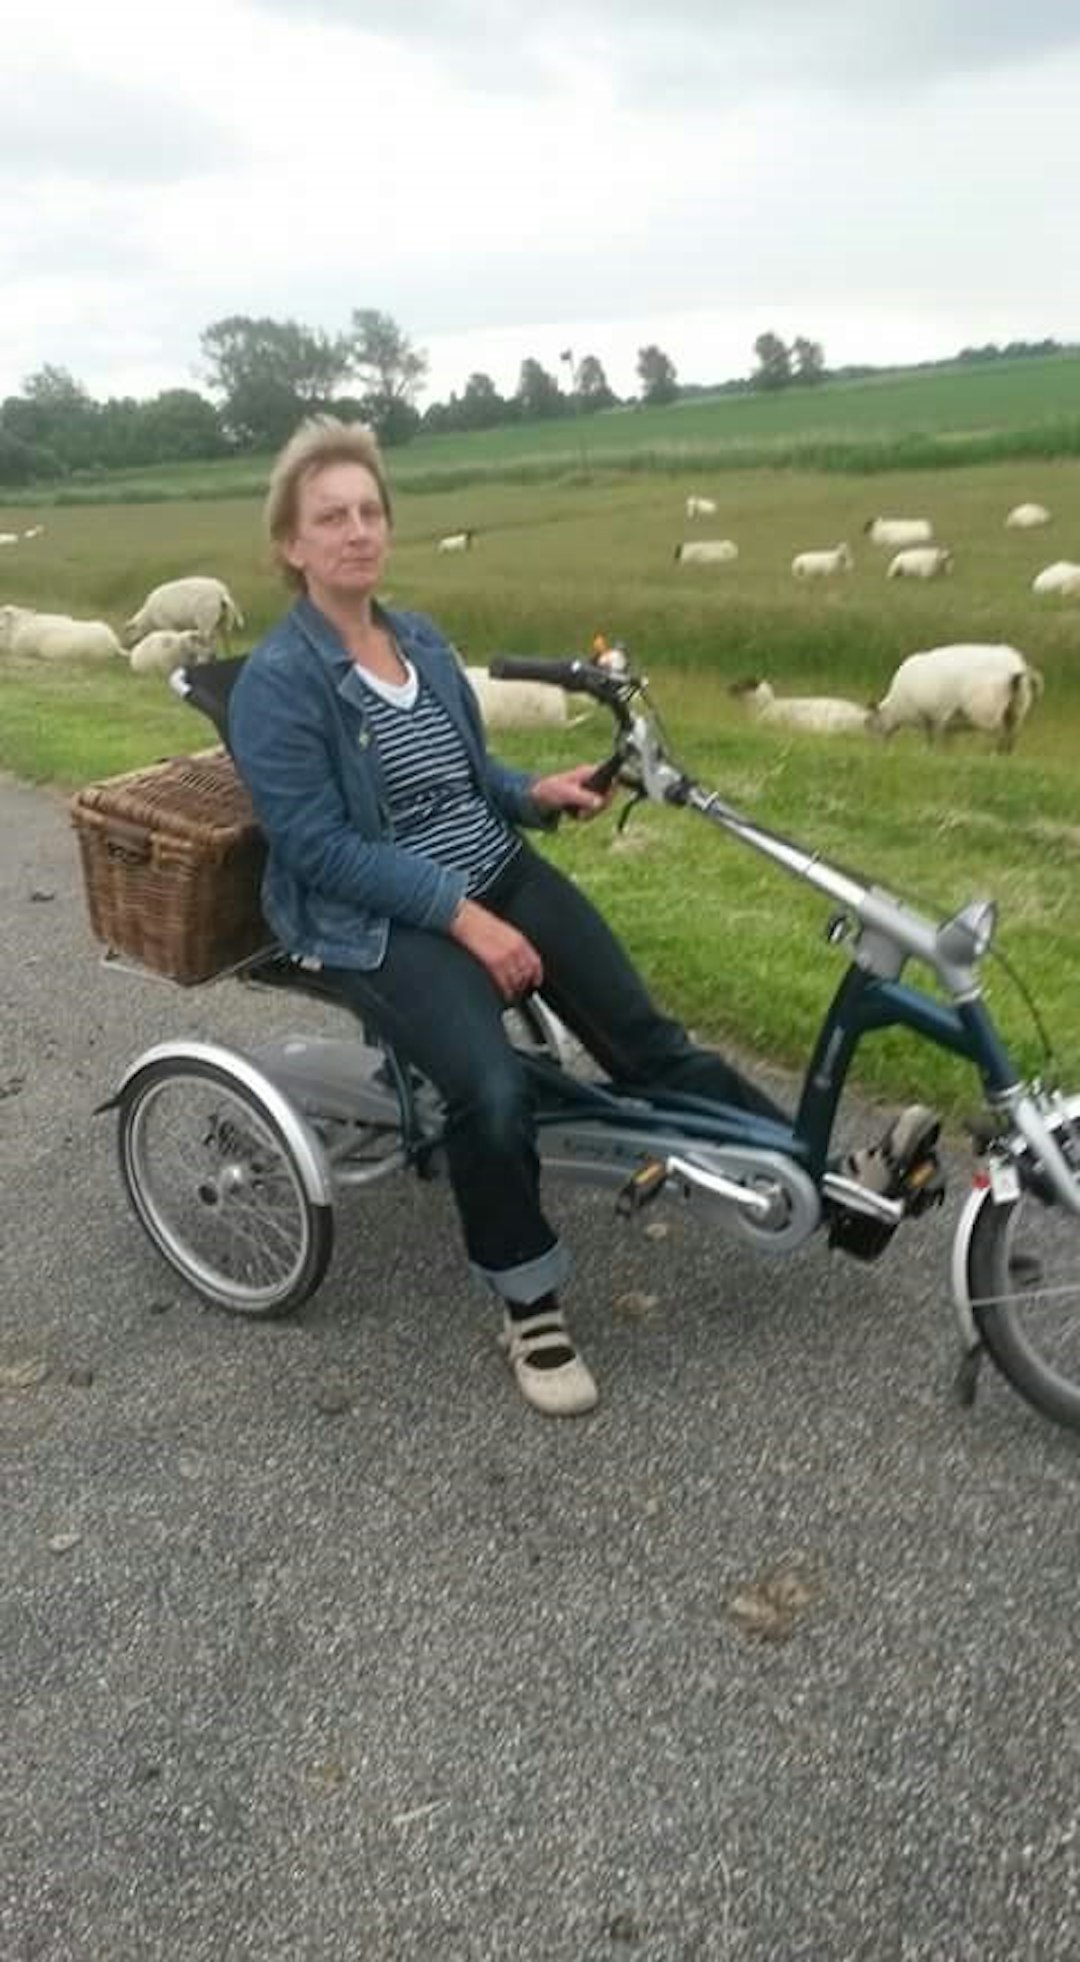 met-de-easy-rider-driewielfiets-langs-de-schapen